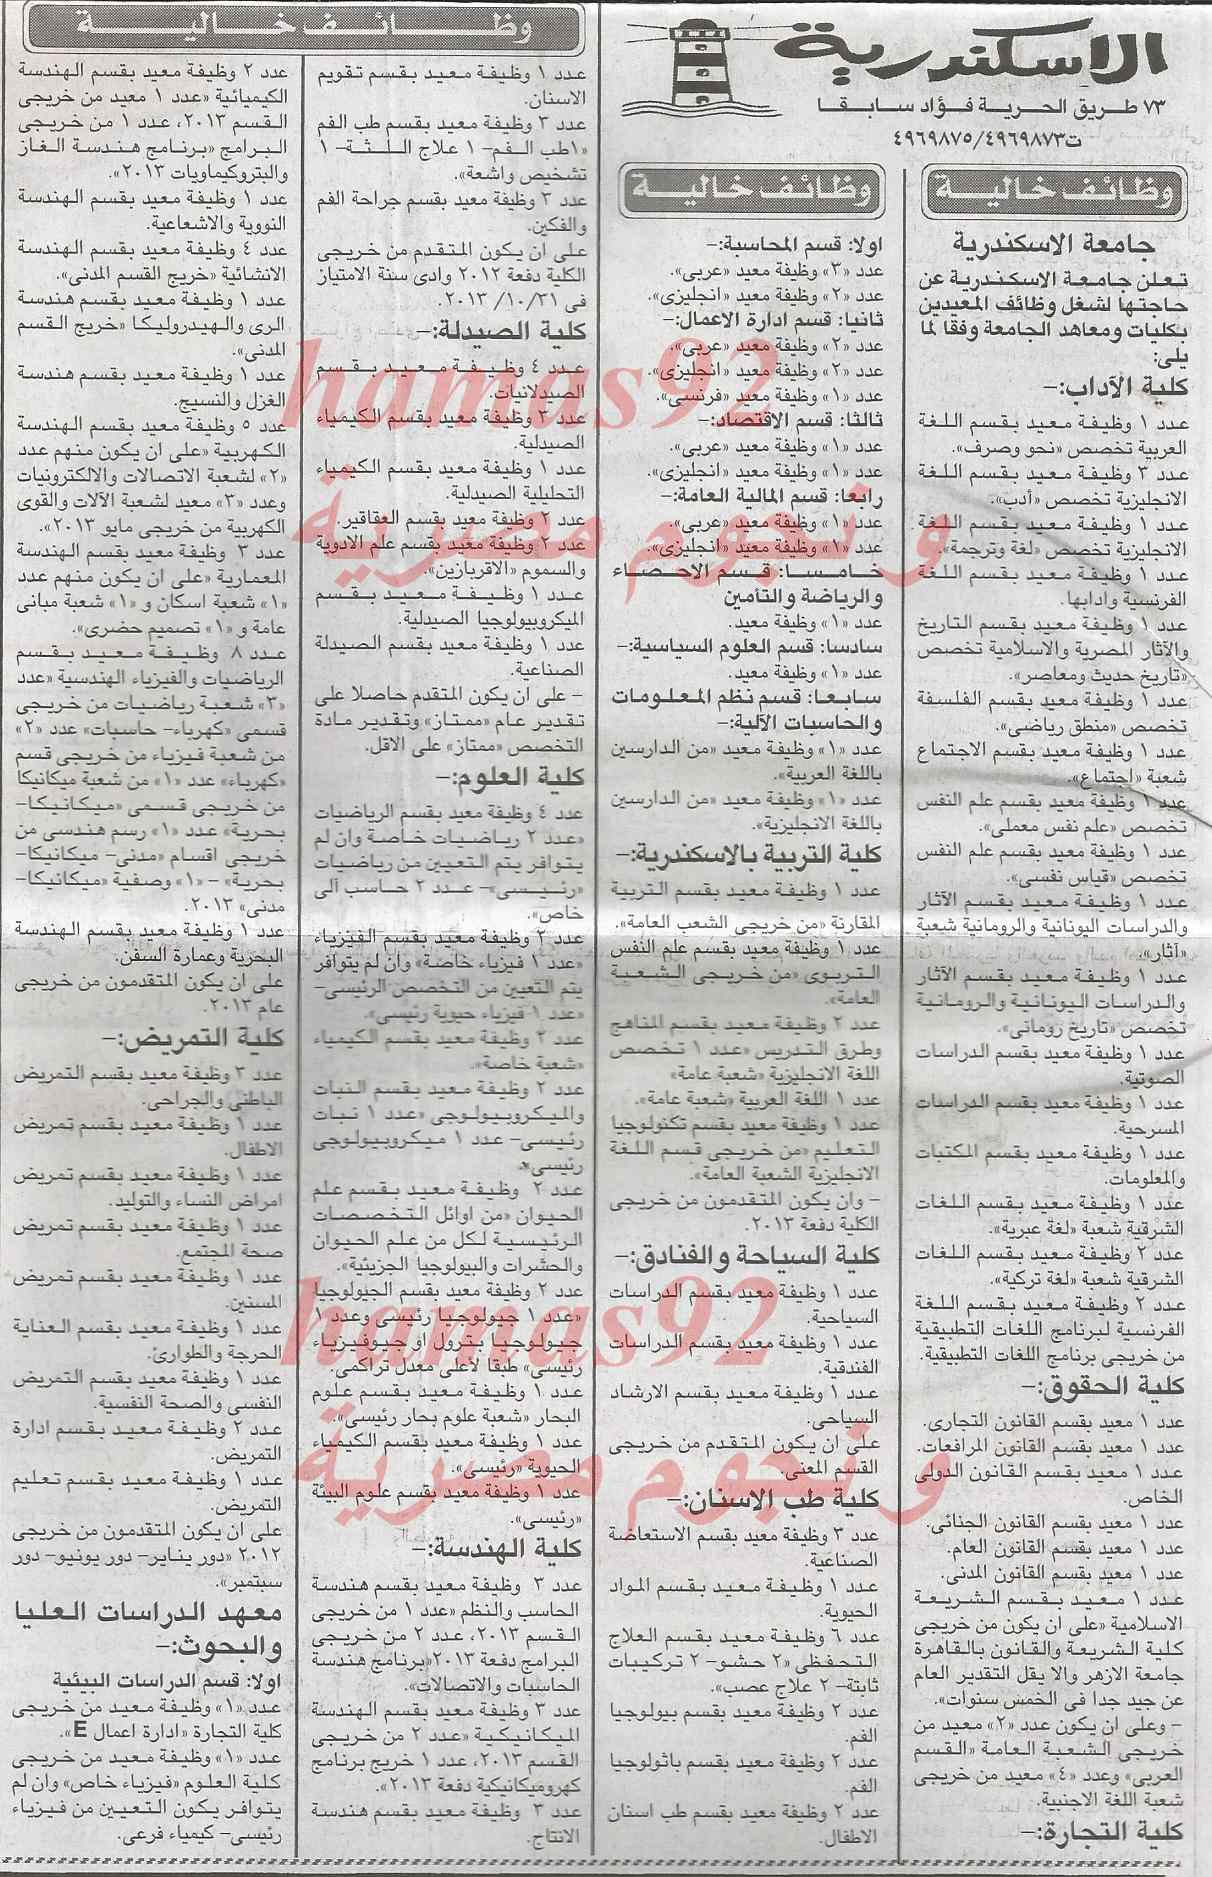 وظائف جريدة الاخبار اليوم الاثنين 3-4-2014 , وظائف خالية اليوم 3 فبراير 2014